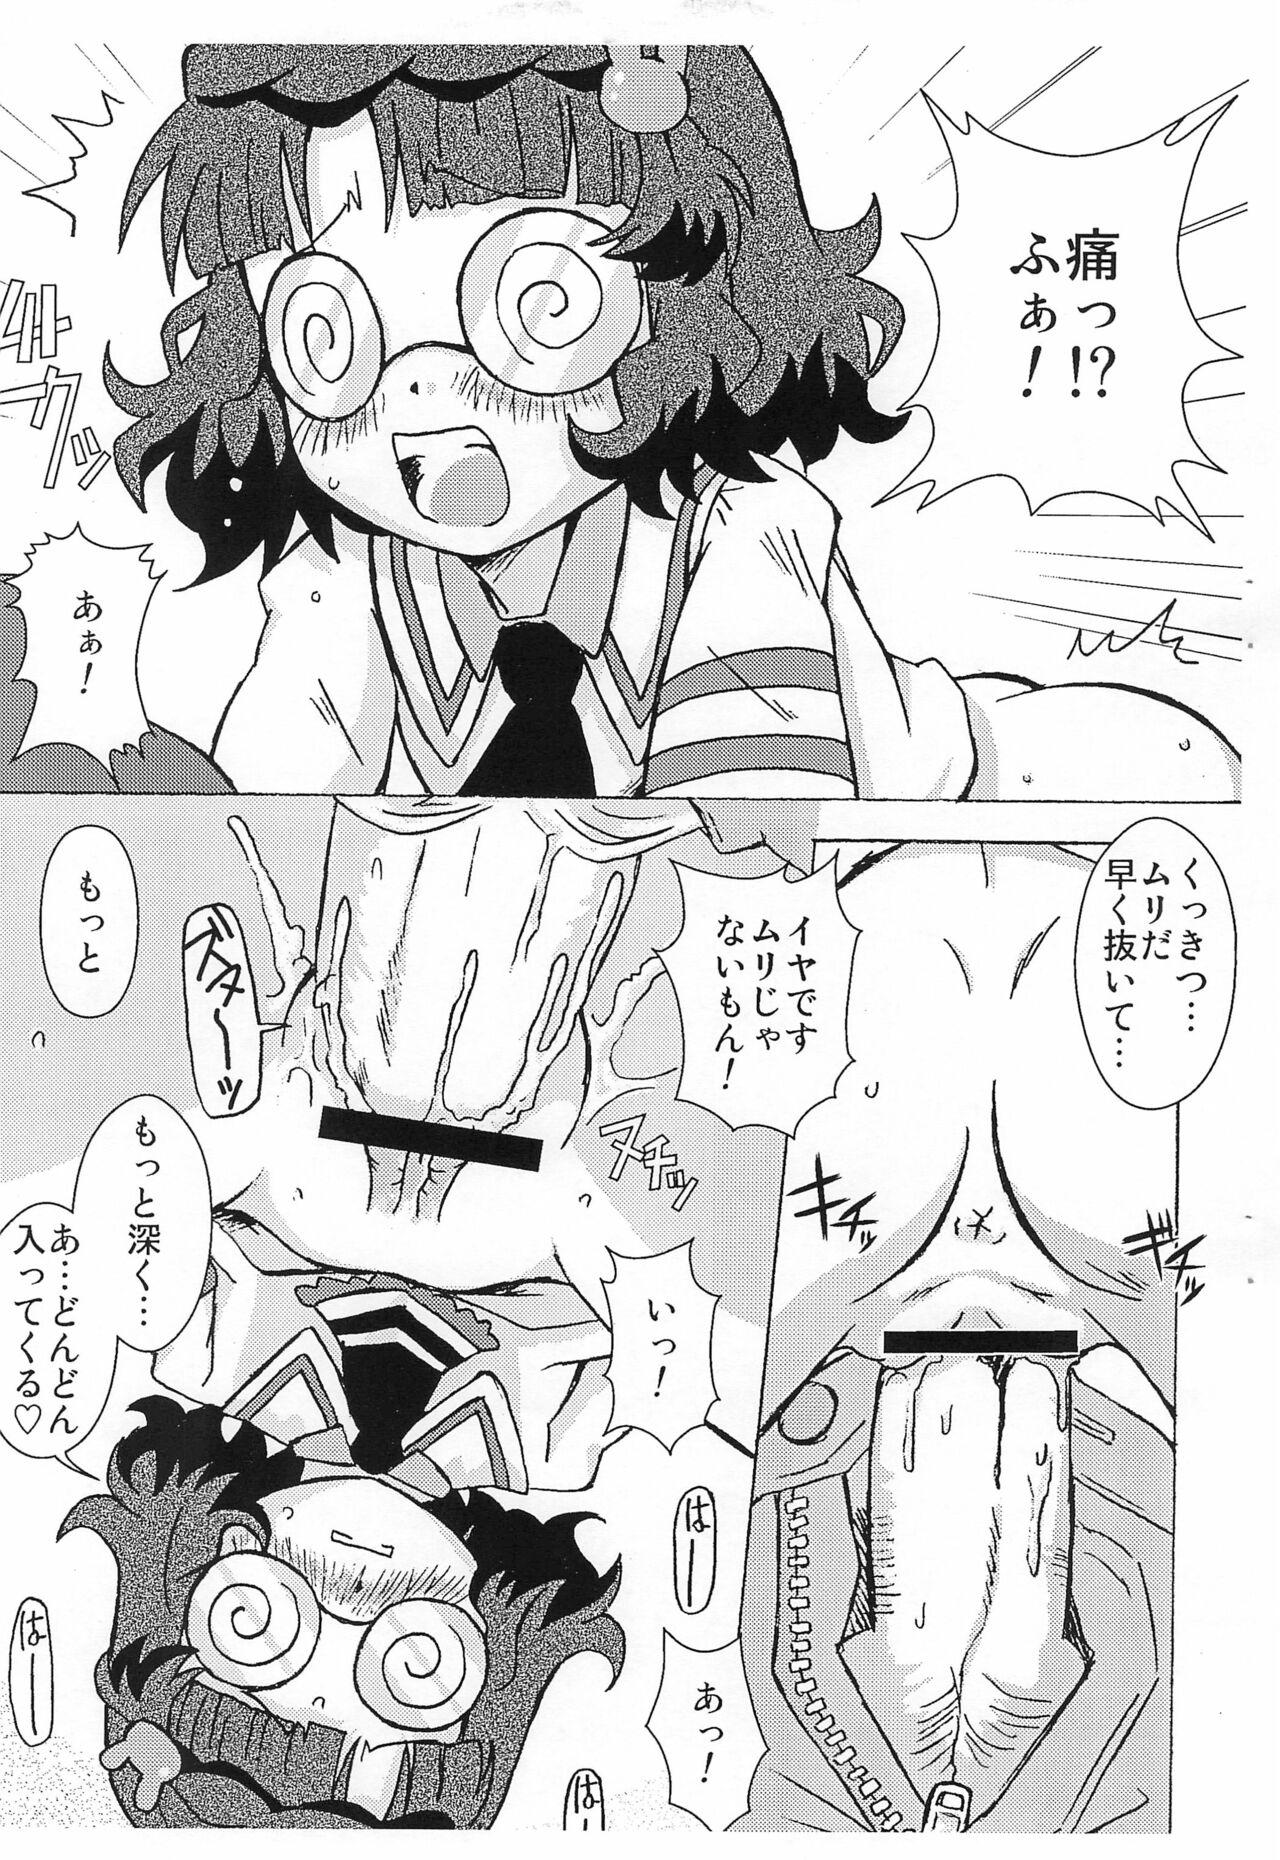 Friend 4-shoku Ball Pen wa Midori ga Amaru - Anyamaru tantei kiruminzoo | animal detective kiruminzoo Cdzinha - Page 7